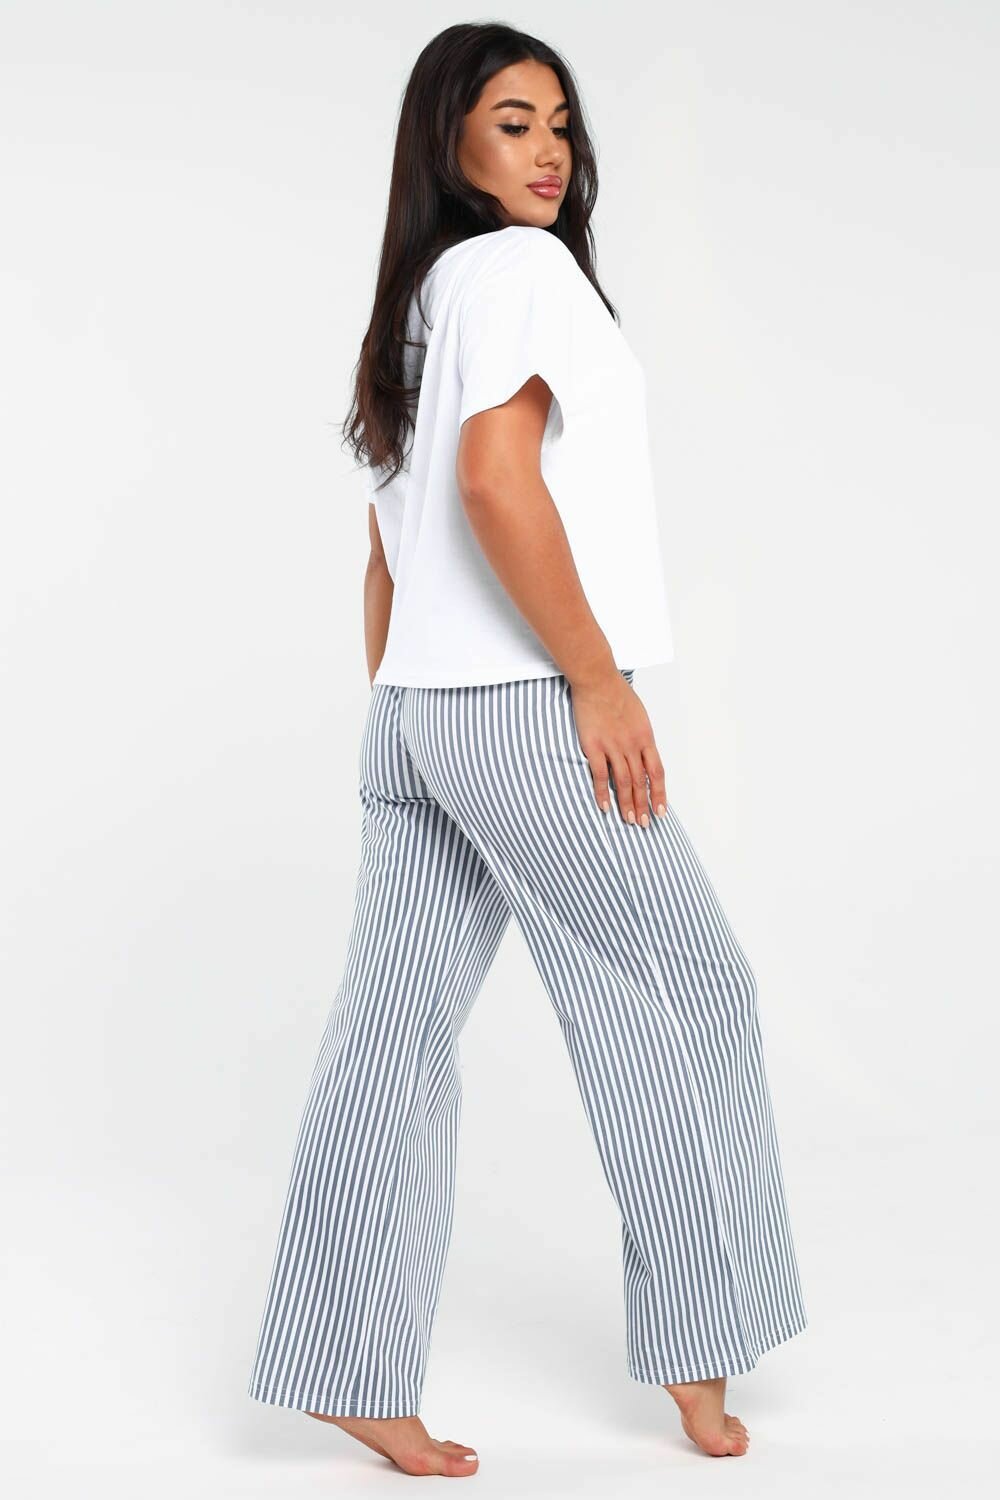 Пижама DIANIDA М-799 размеры 44-54 (54, светло-серый) - фотография № 3